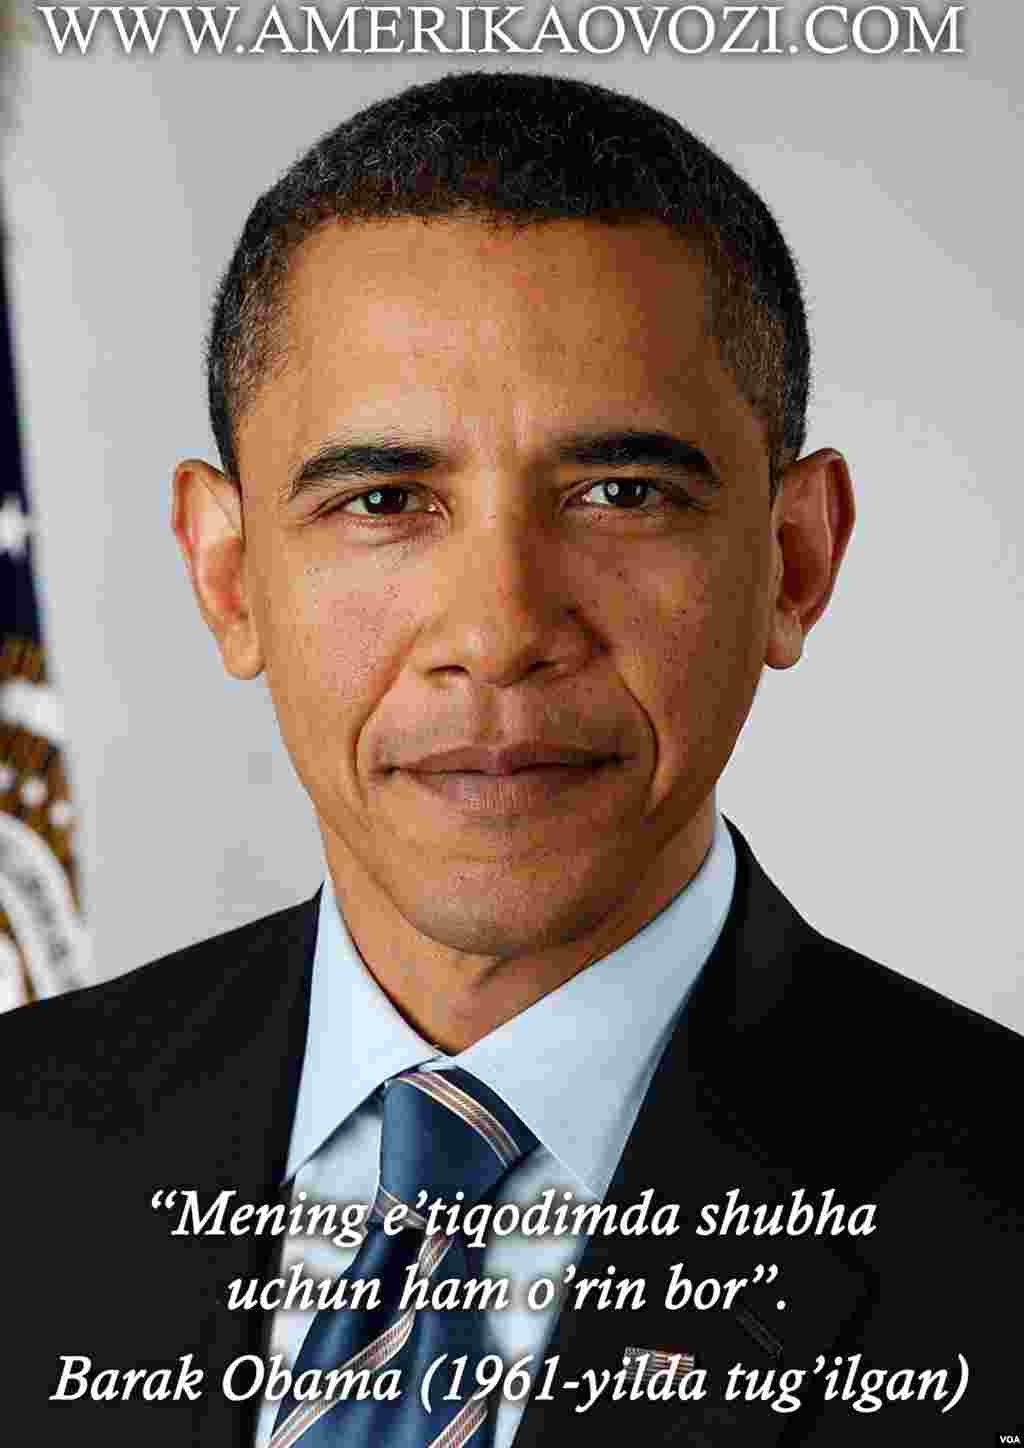 Barak Obama 2009-2017-yillarda Amerikaning 44-prezidenti sifatida faoliyat yuritgan